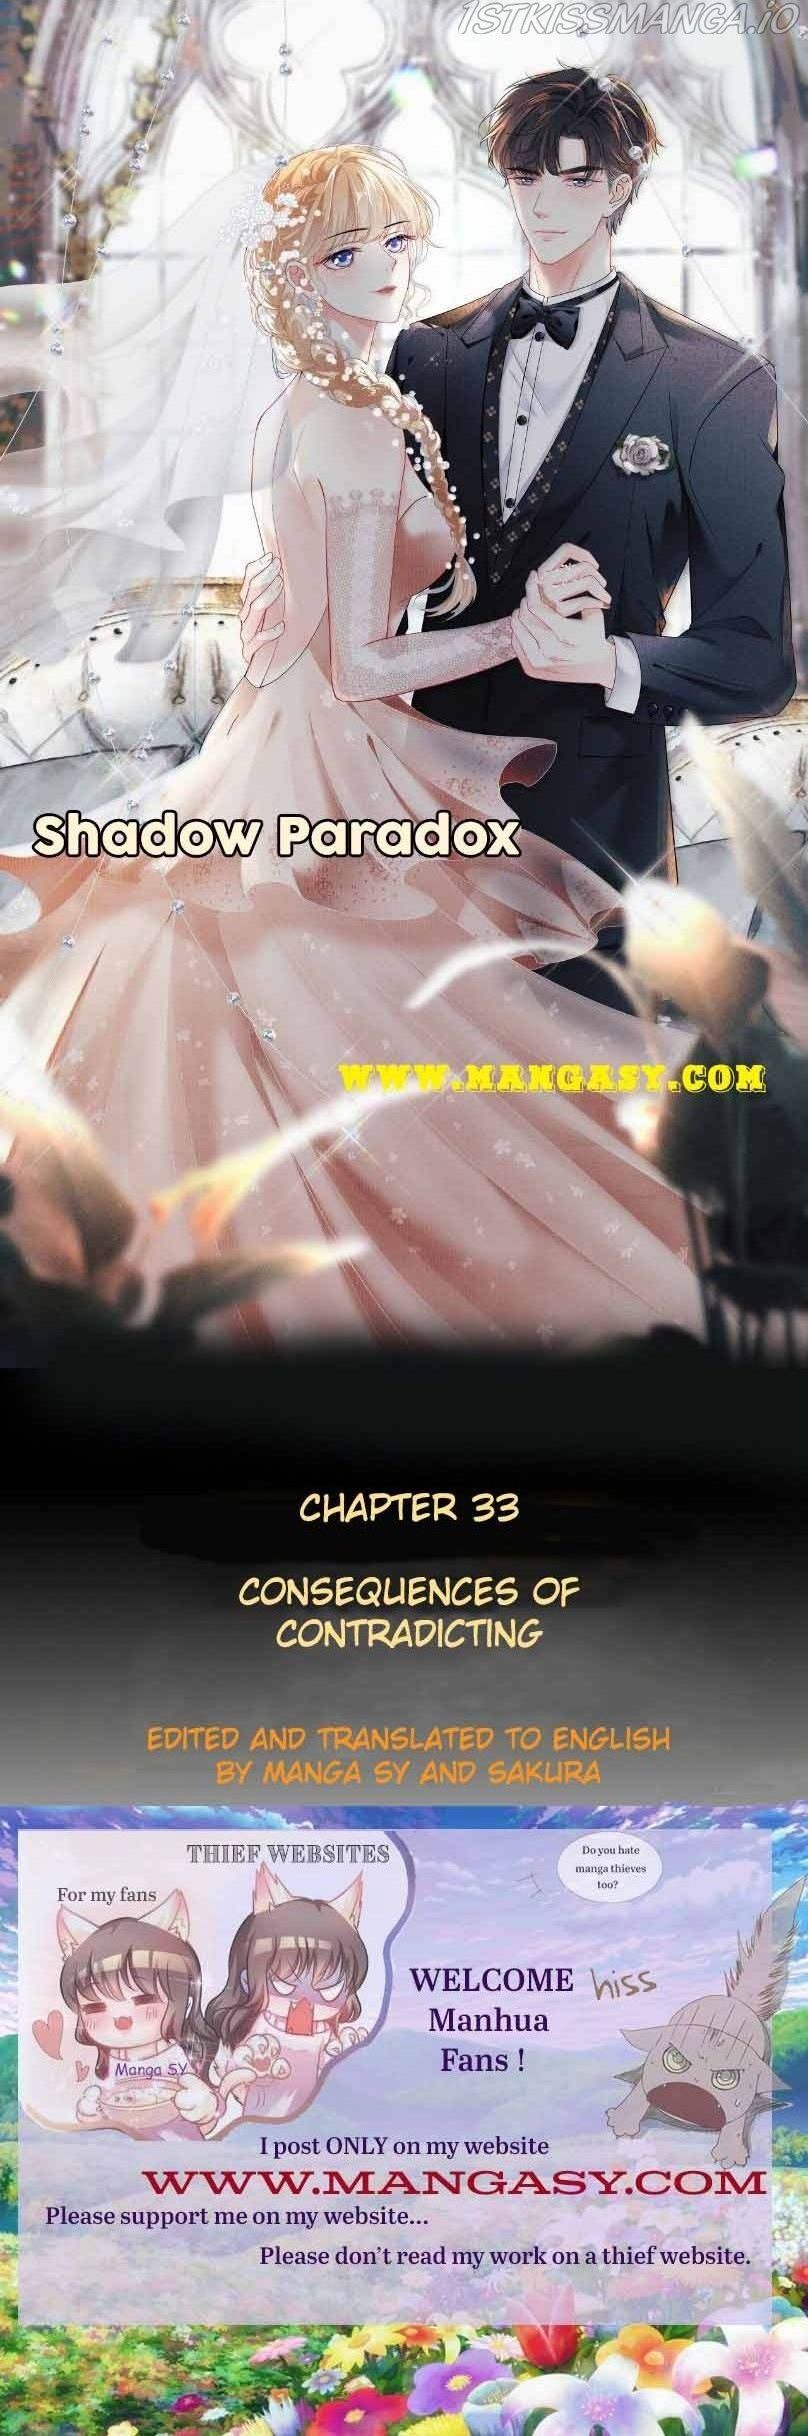 Paradox Of Shadows: Unreachable You - Page 1